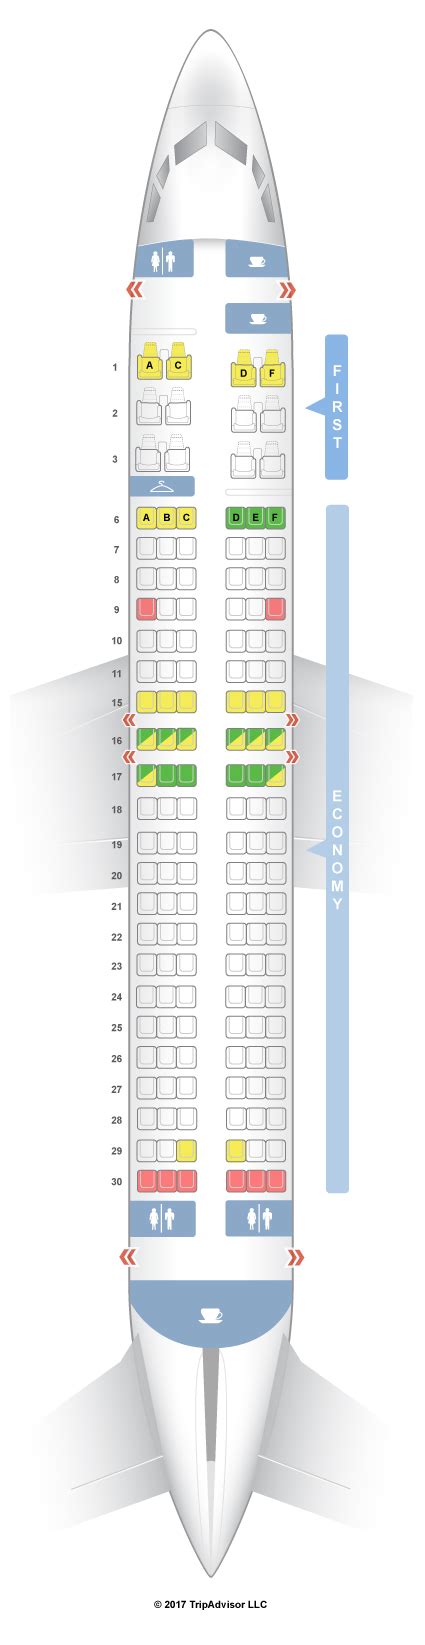 boeing 737-400 seating